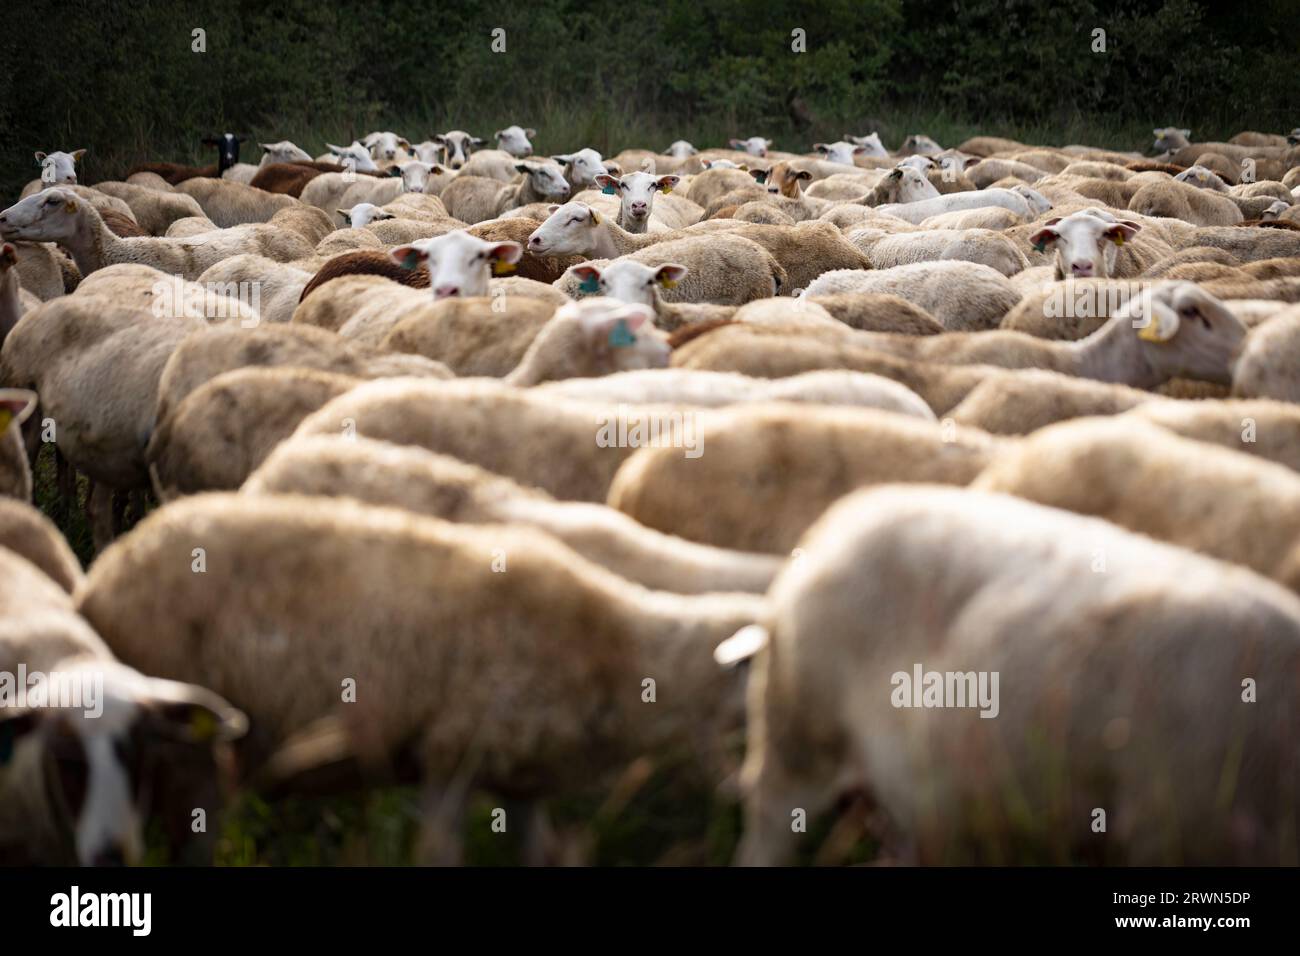 El Soler de n'Hug sheep flock (Ovis aries). Prats de Lluçanès, El Lluçanès, Barcelona, Catalonia, Spain, Europe Stock Photo